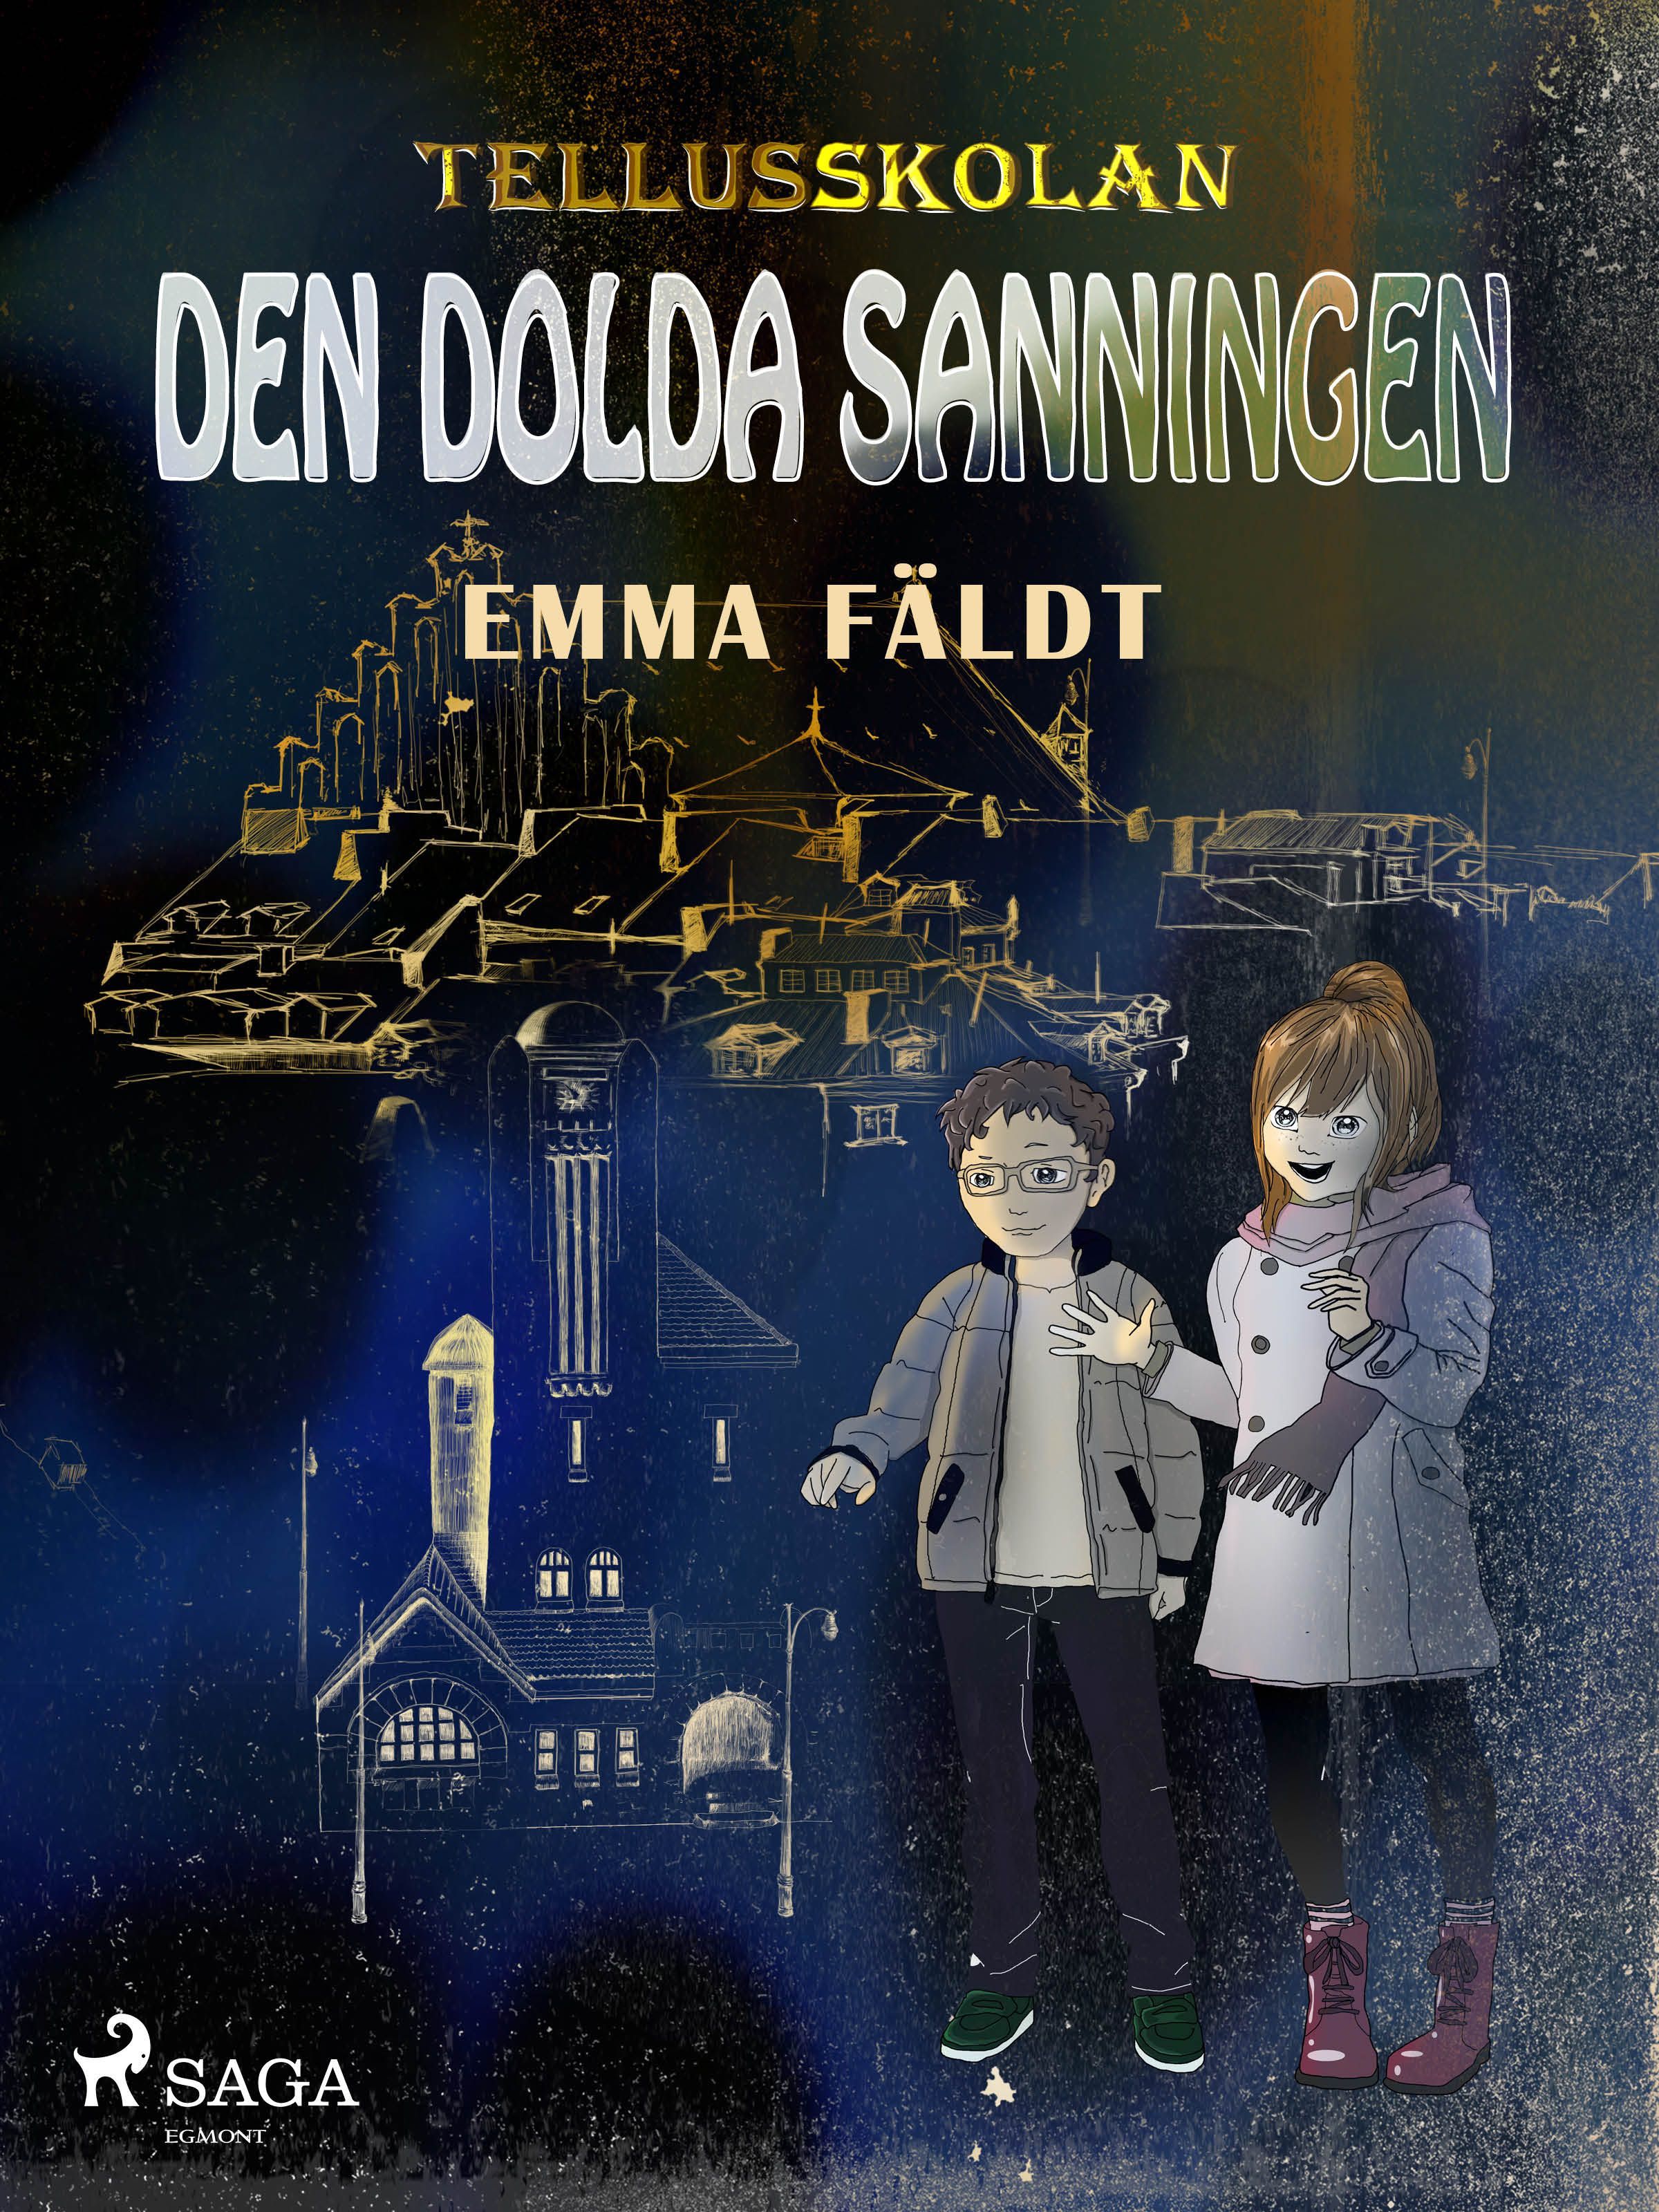 Tellusskolan: den dolda sanningen, e-bok av Emma Fäldt